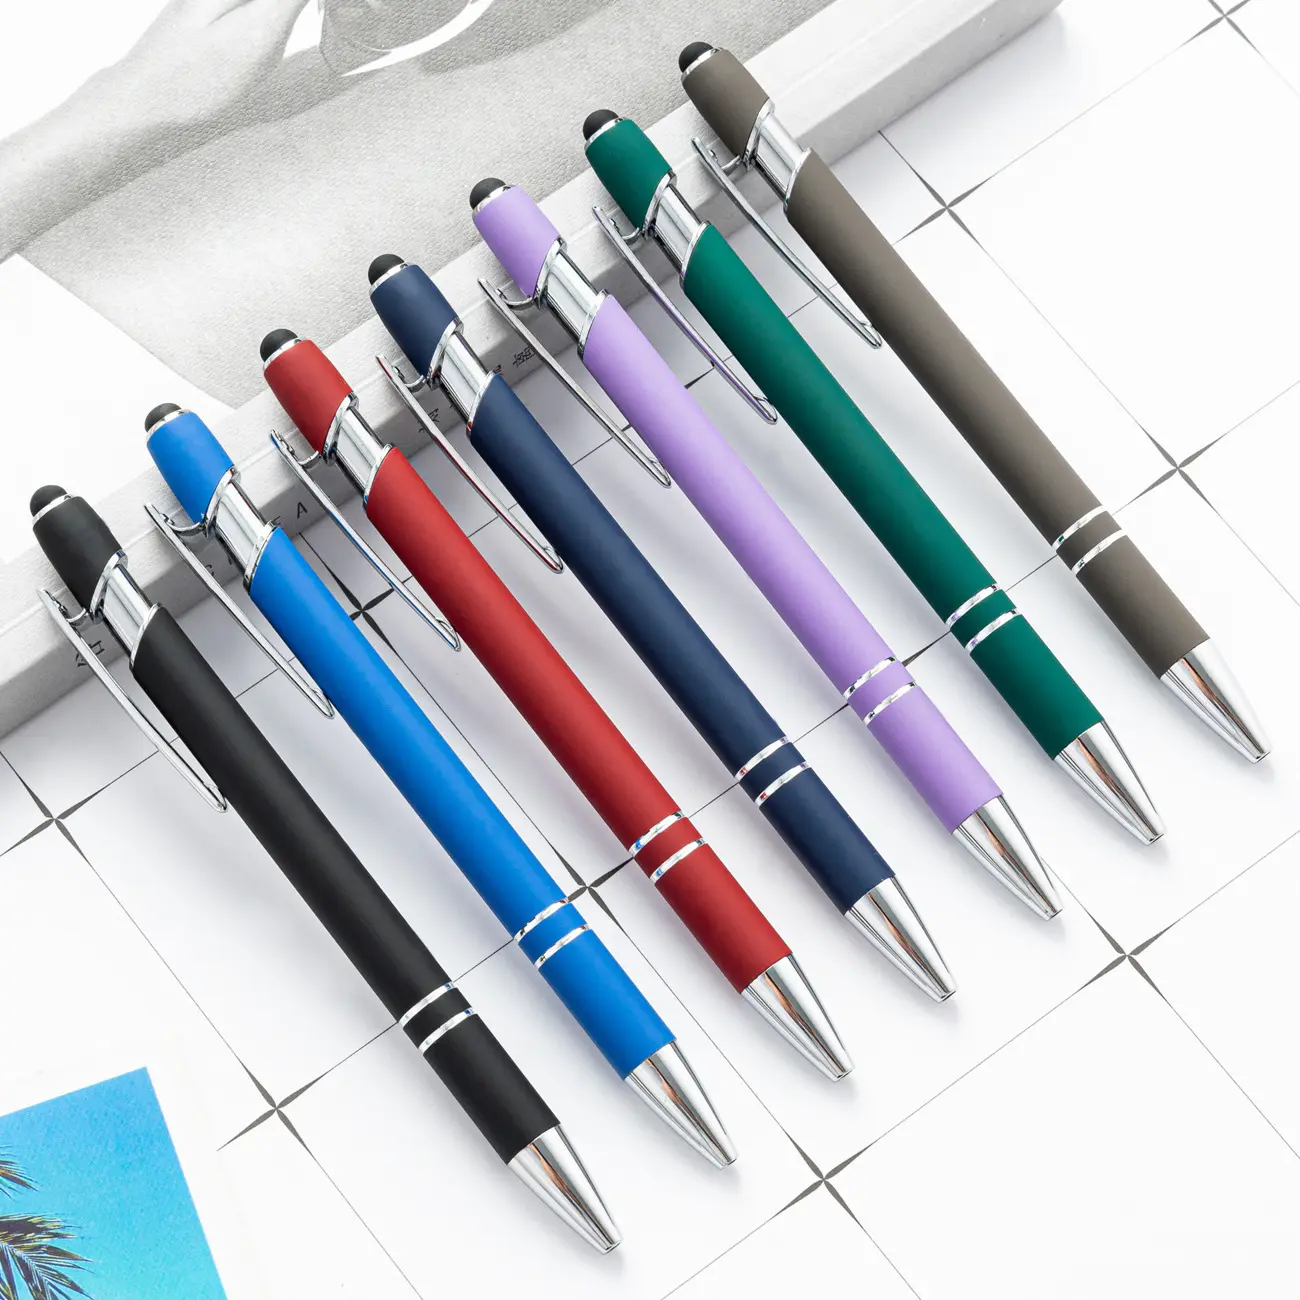 قلم حبر متعدد الوظائف مع قلم حبر, قلم حبر معدن متعدد الوظائف 2 في 1 يعمل باللمس بألوان مختلفة